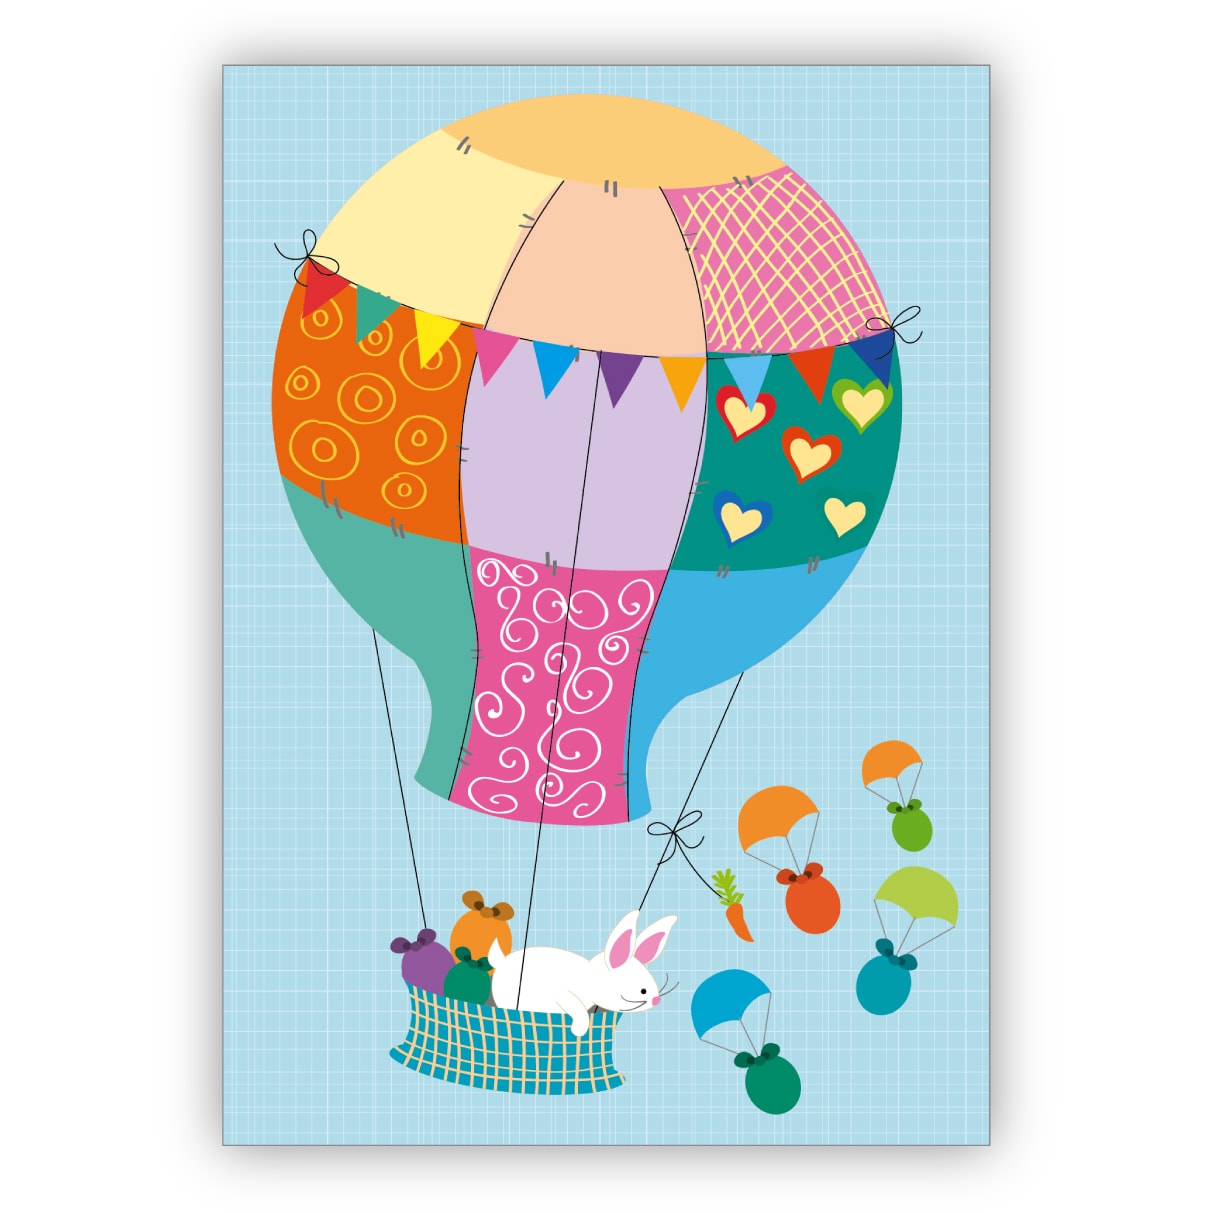 Schöne illustrierte Osterkarte mit Häschen im Heißluftballon und fliegenden Ostereiern